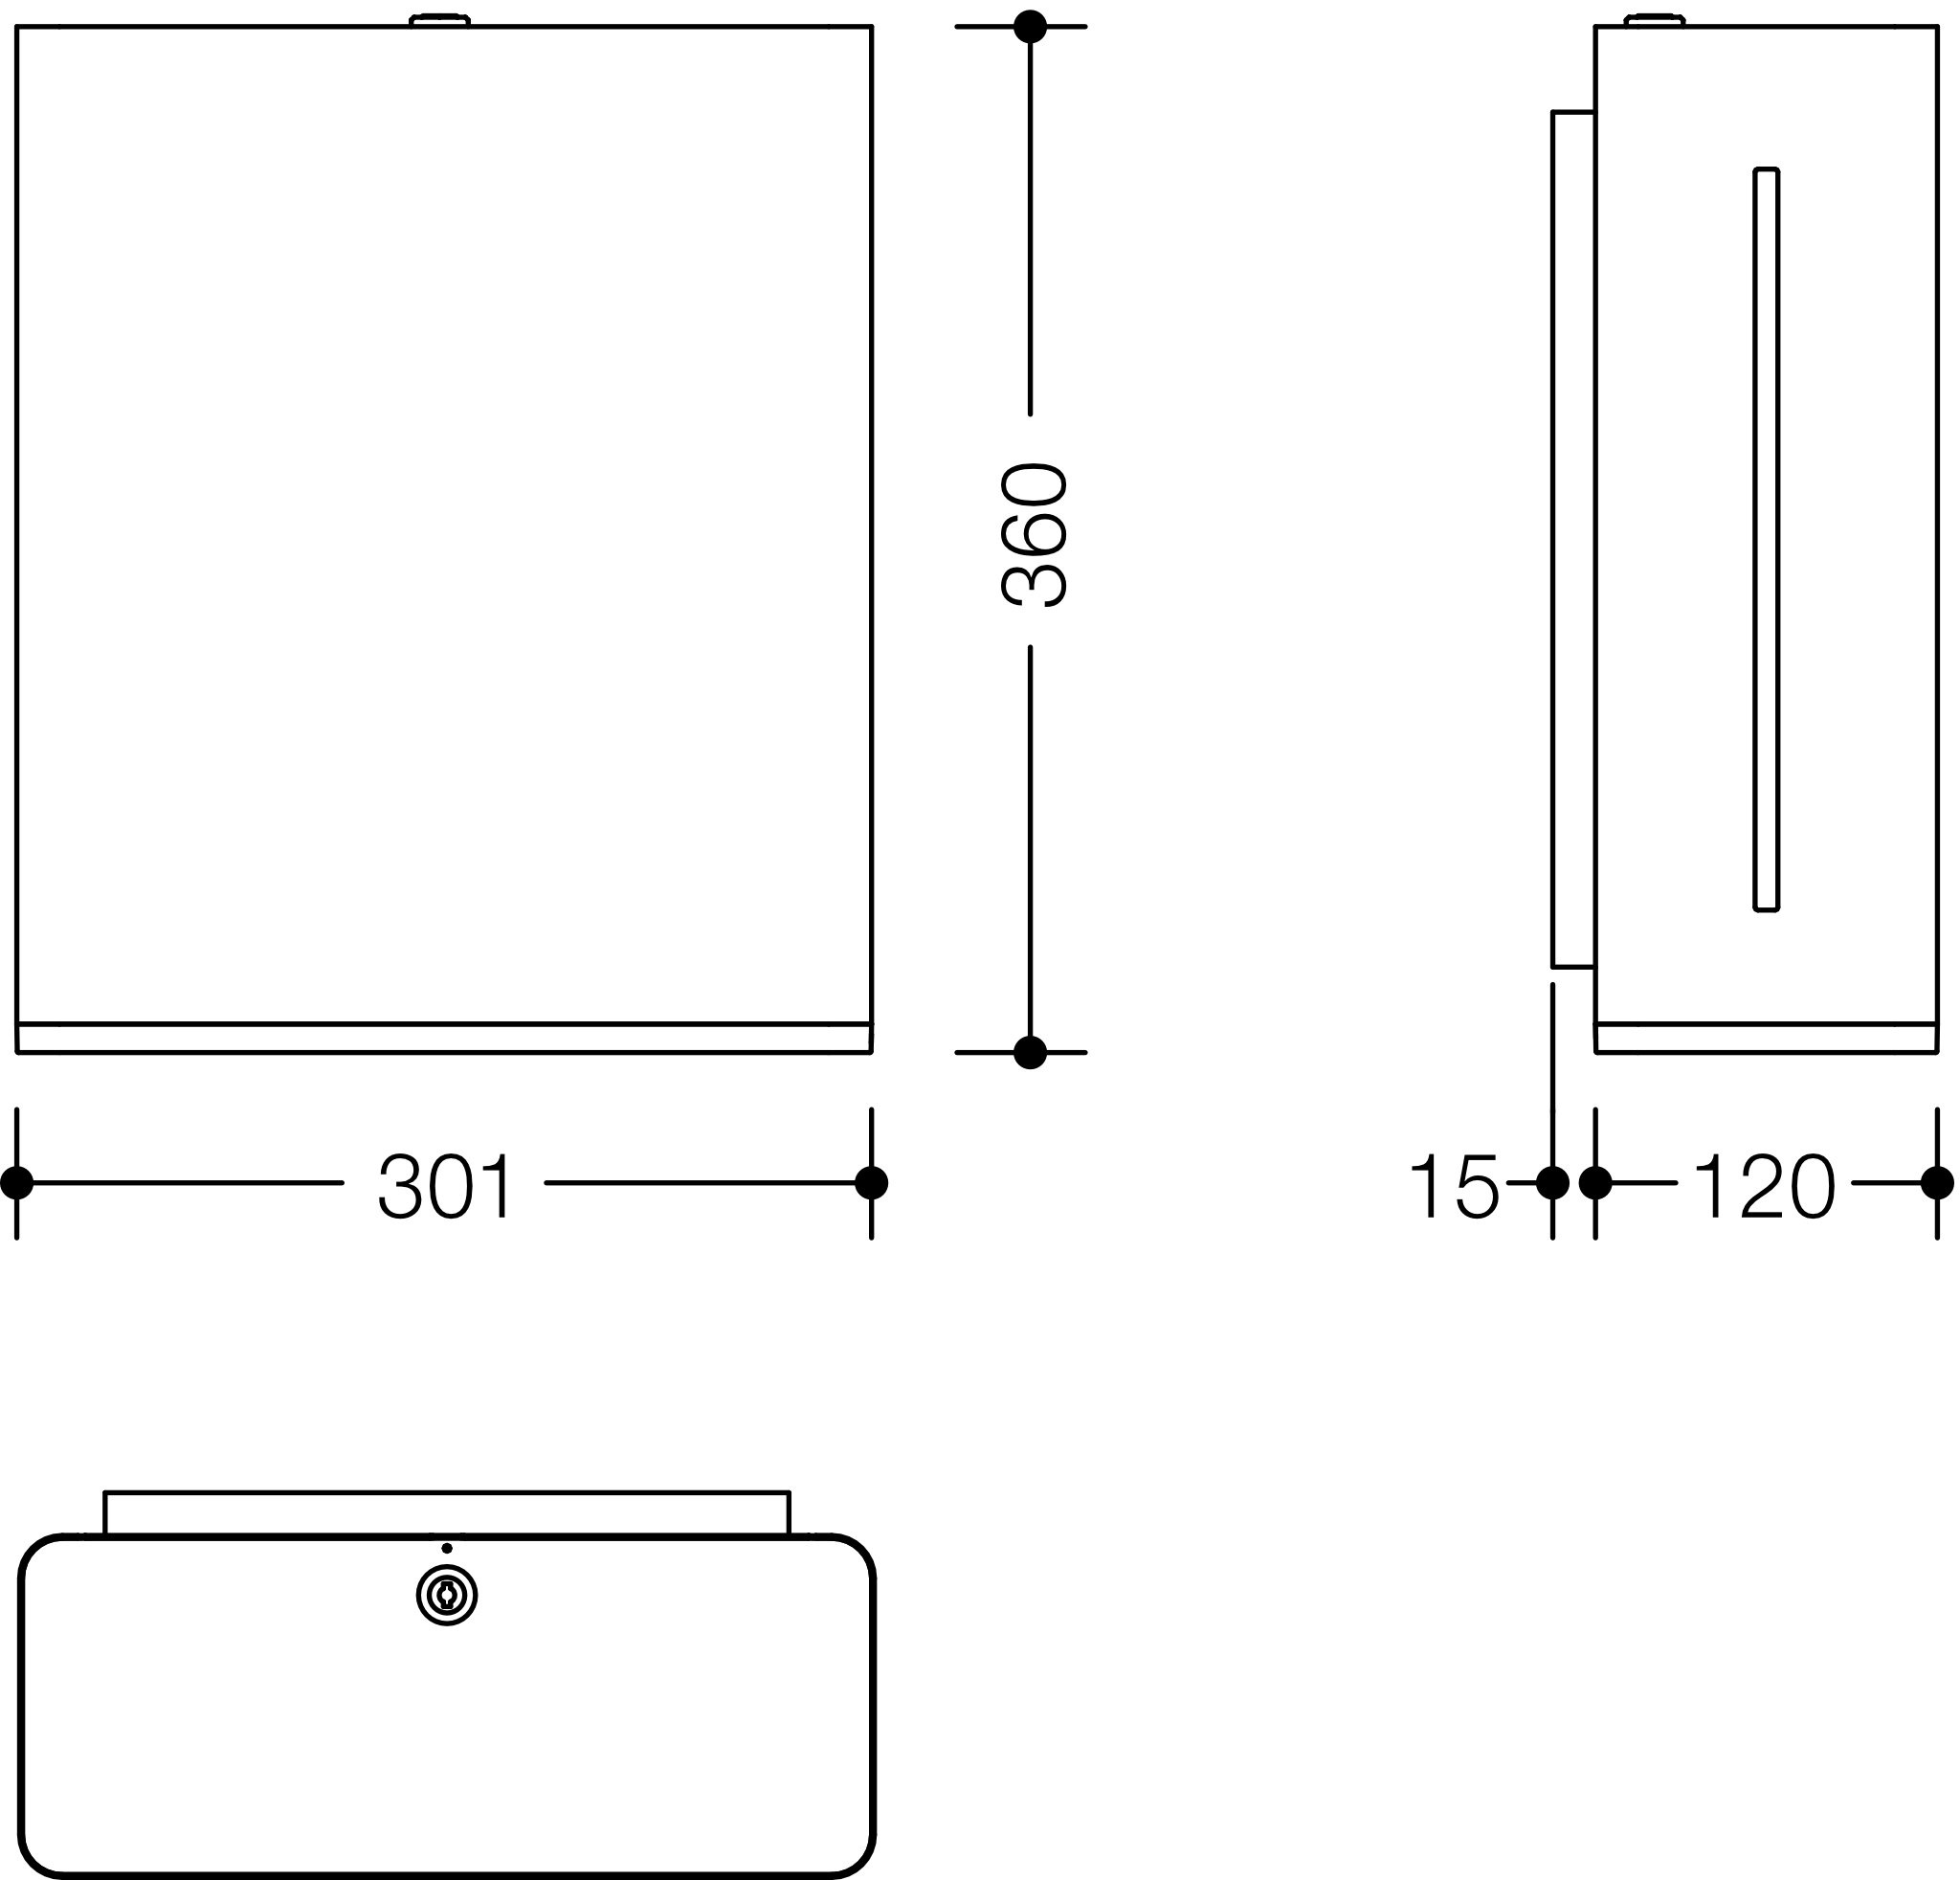 HEWI Papierhandtuchspender „Serie 805“ 30 × 12 × 36 cm